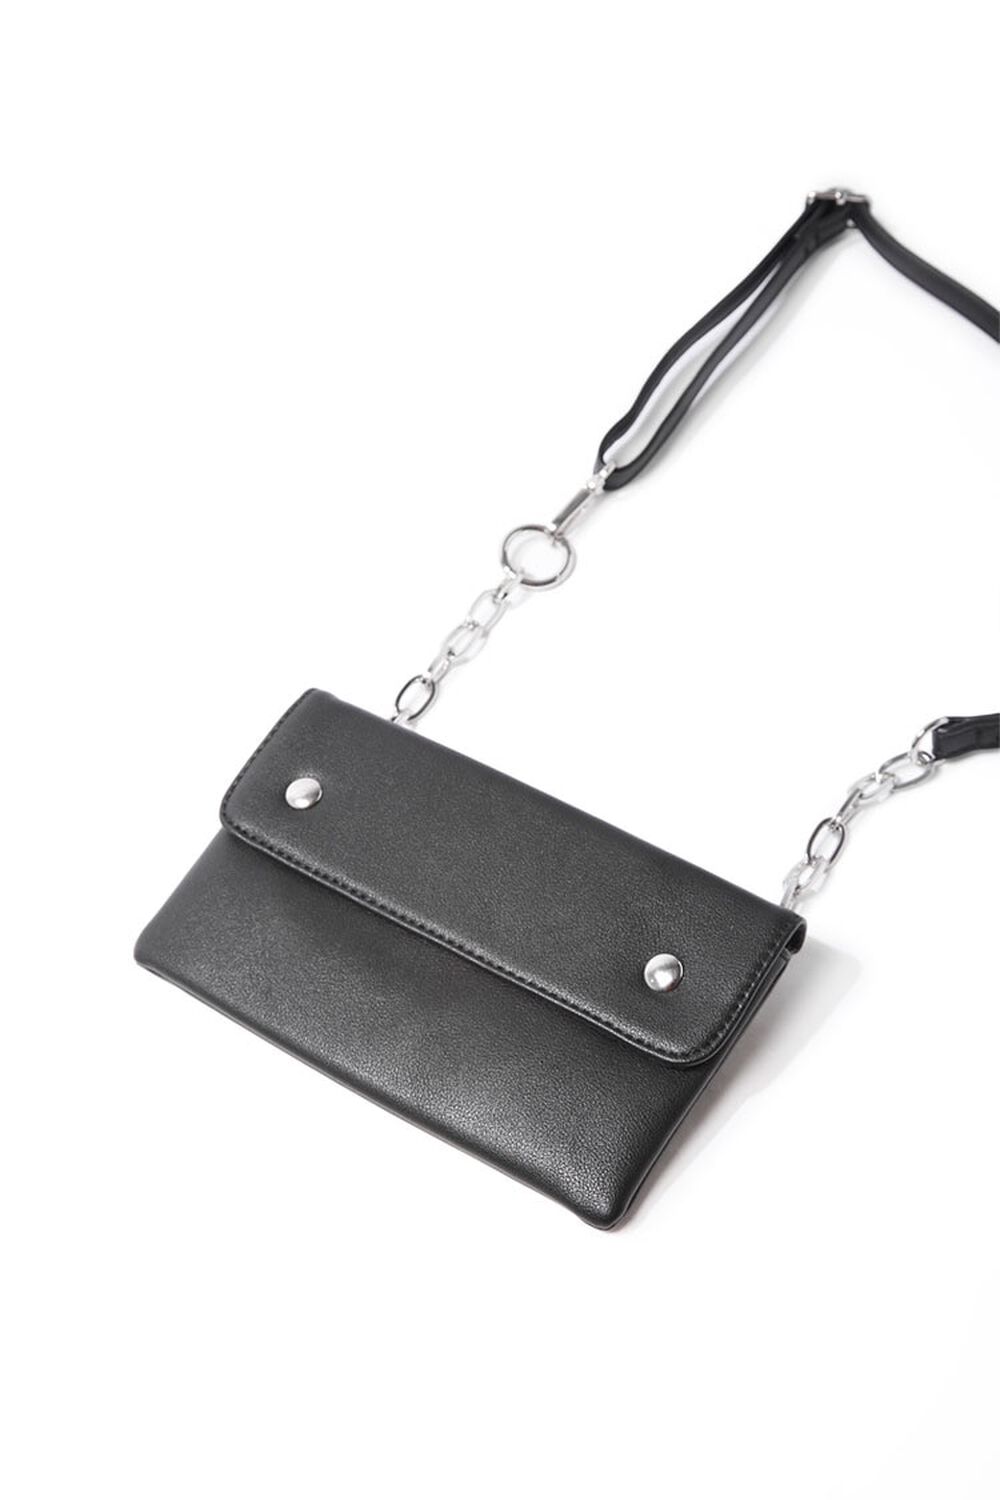 BLACK Faux Leather Belt Bag, image 1